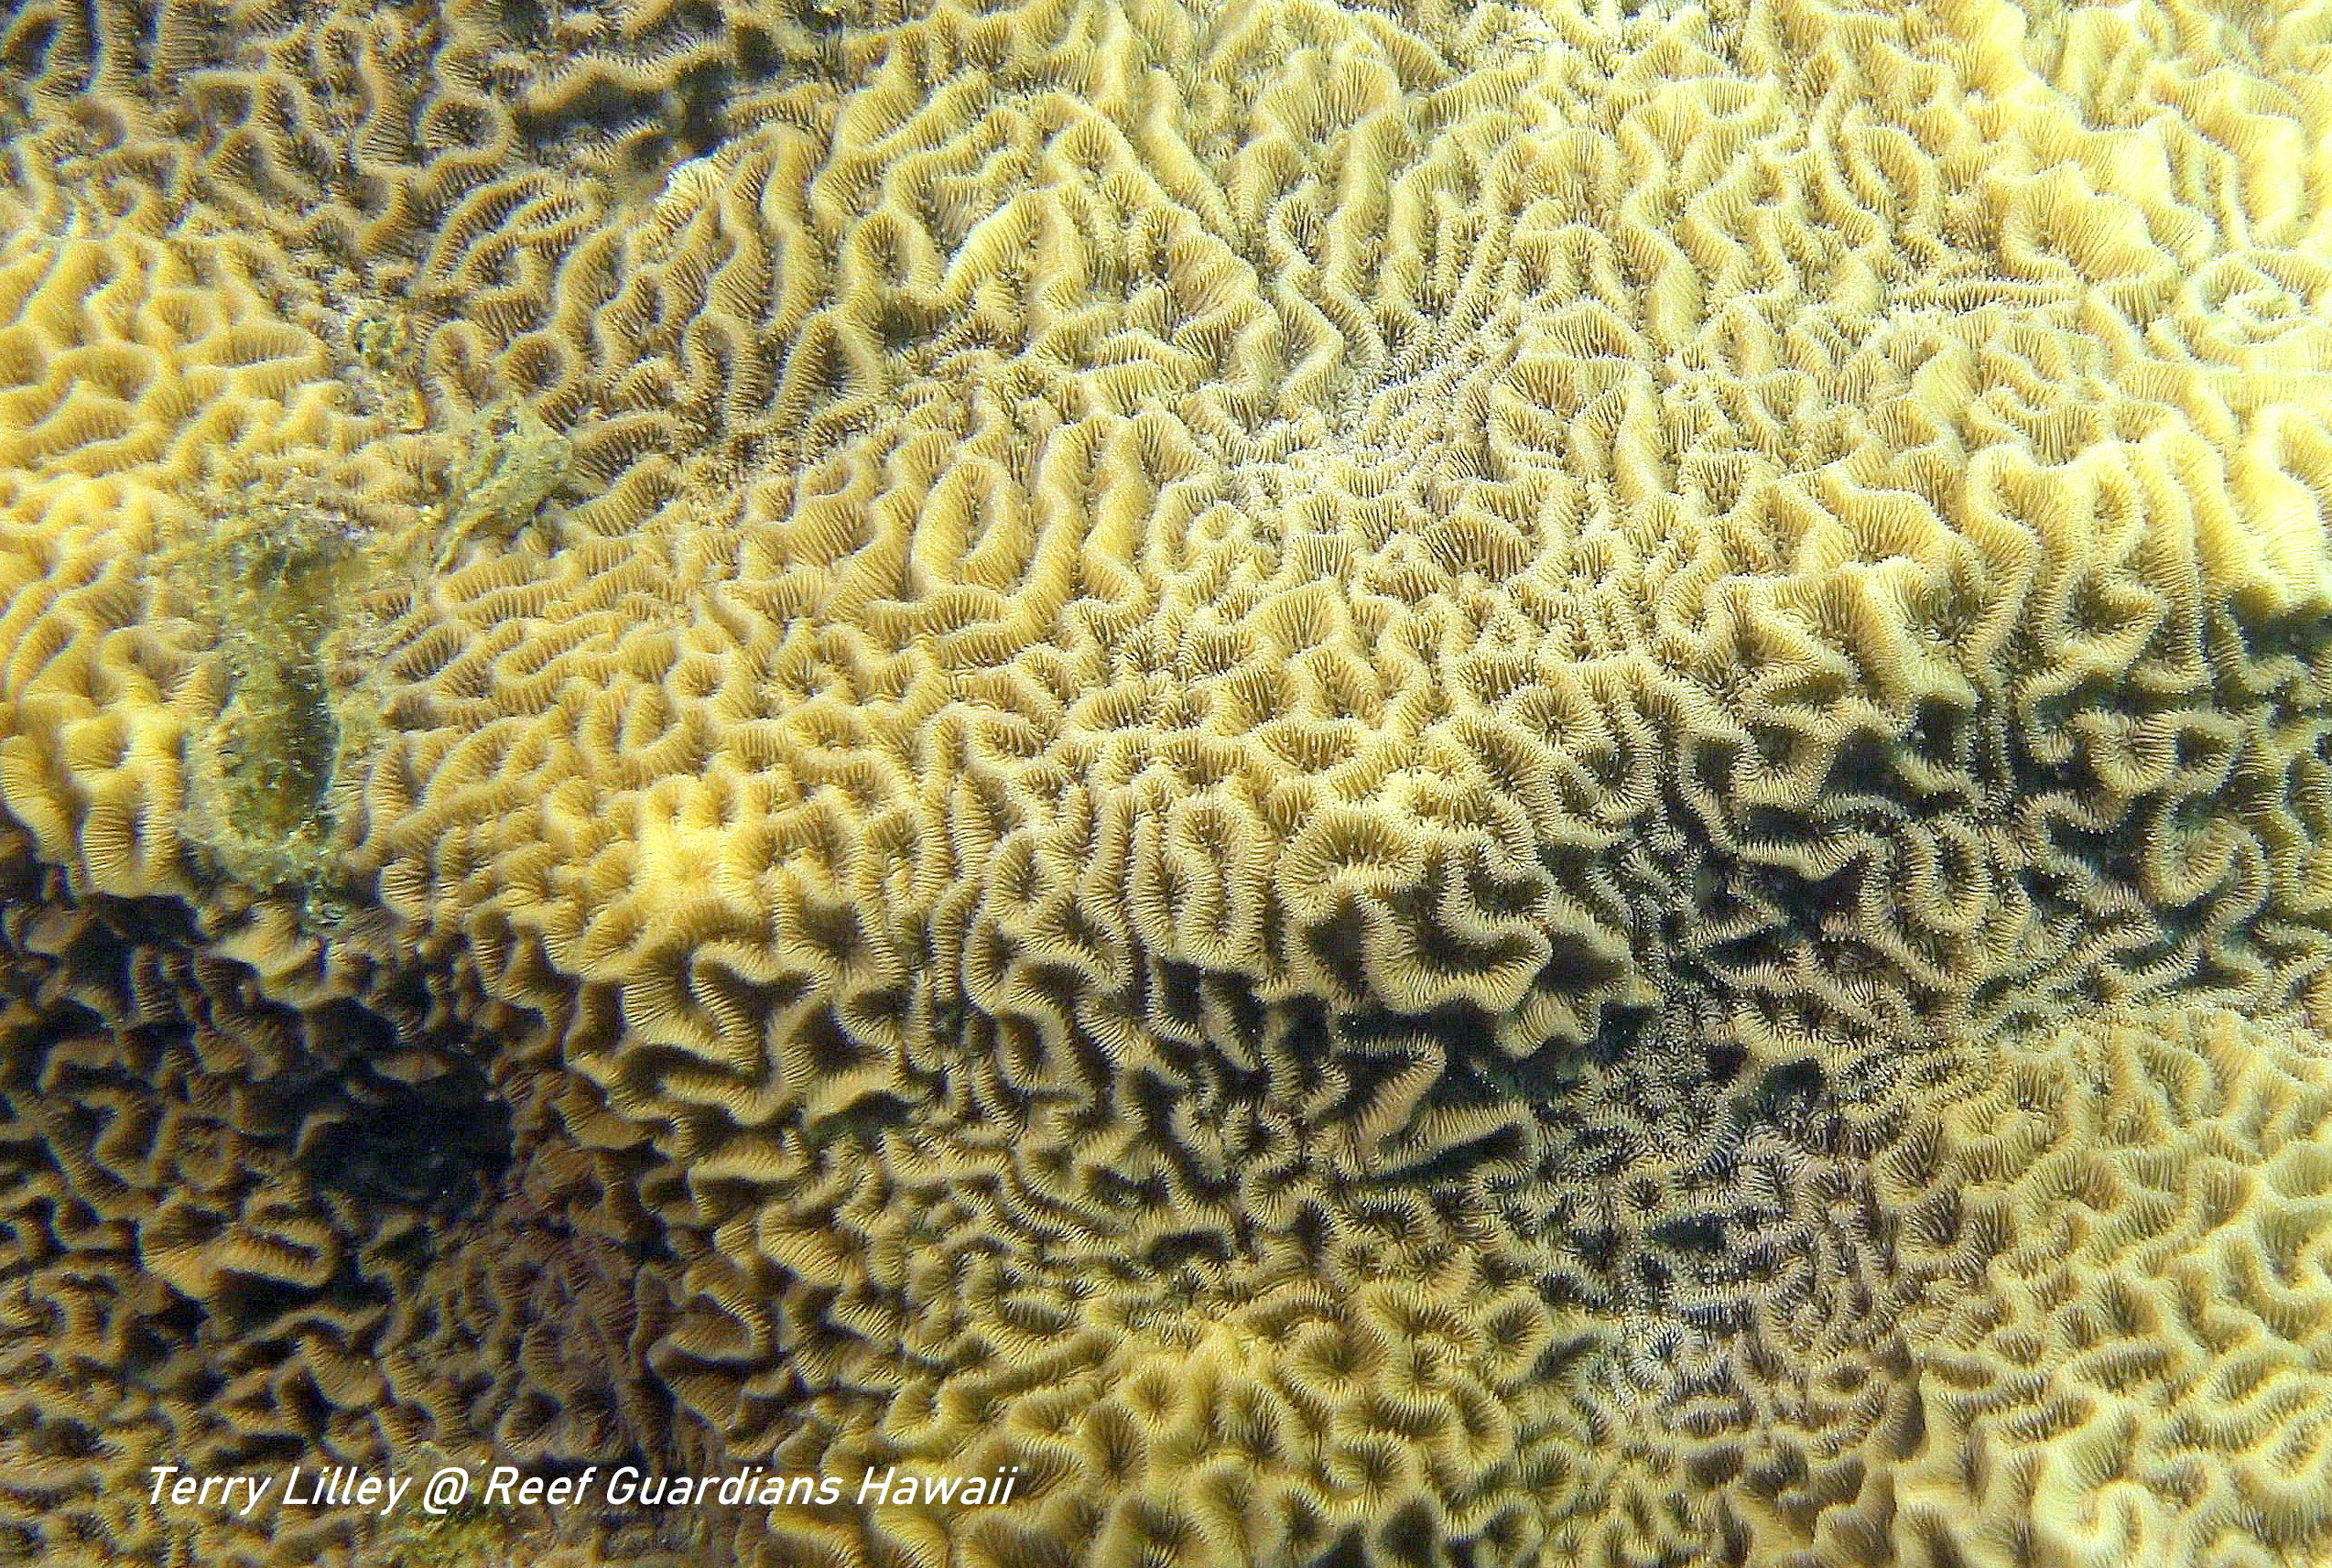 Corrugated Coral